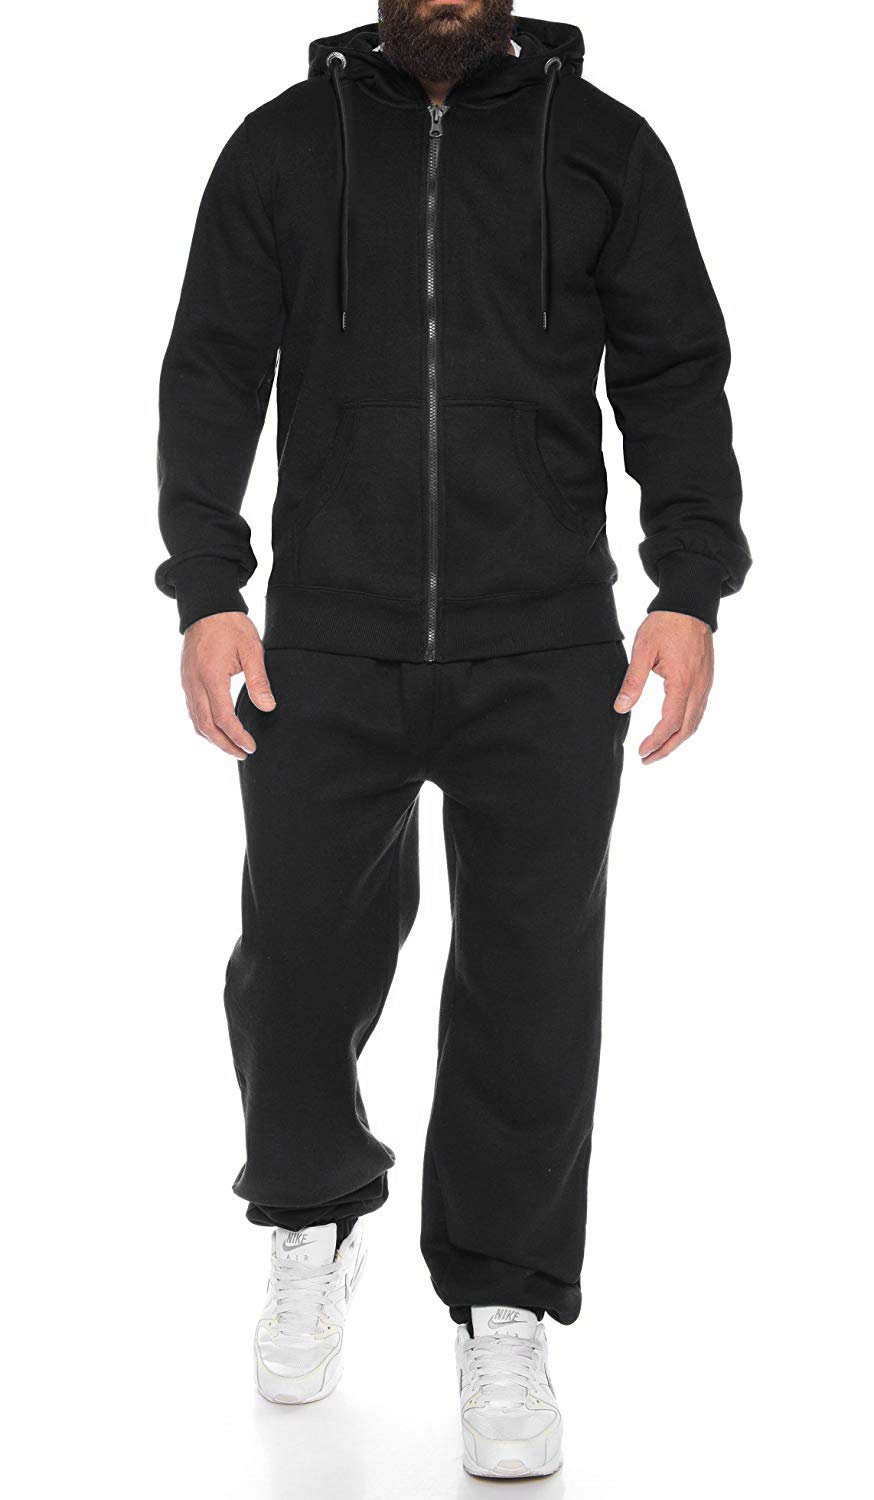 COOFANDY Sweatsuits for Men Long Sleeve 2 Piece Full Zip Hoodie